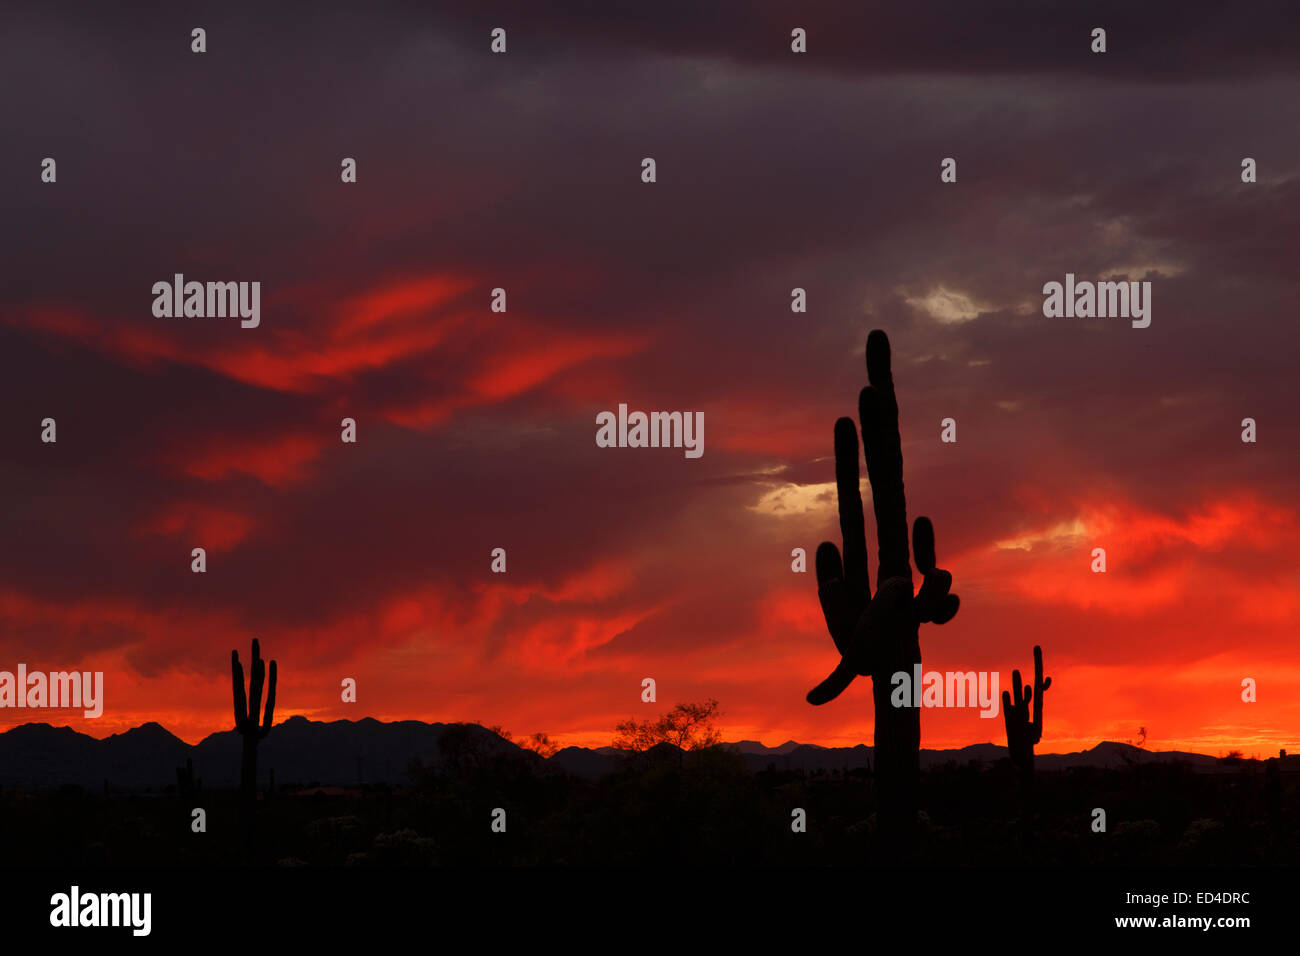 Saguaro cactus at sunset, Scottsdale, Arizona. Stock Photo